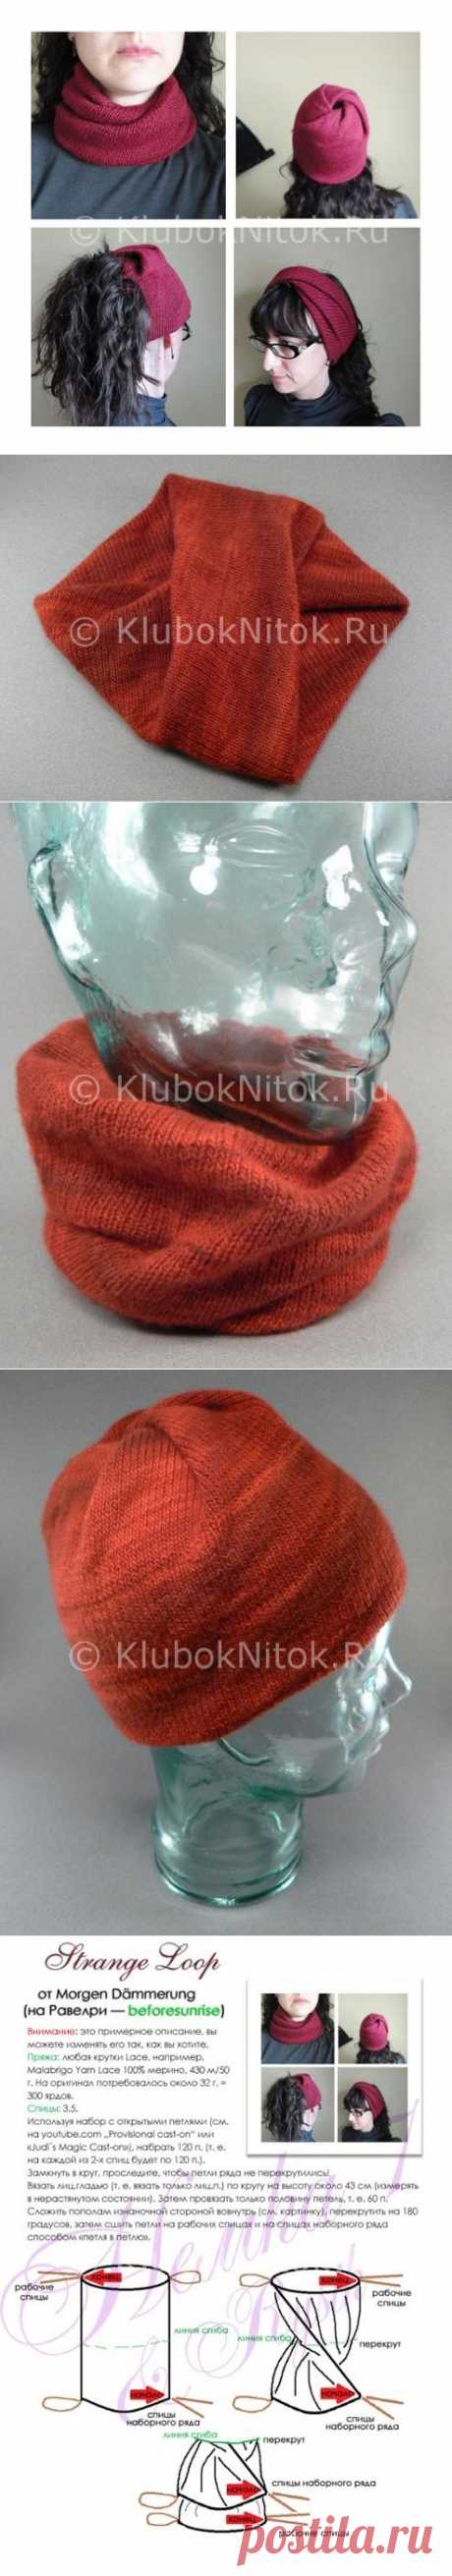 Снуд-шапка-трансформер | Вязание для женщин | Вязание спицами и крючком. Схемы вязания.